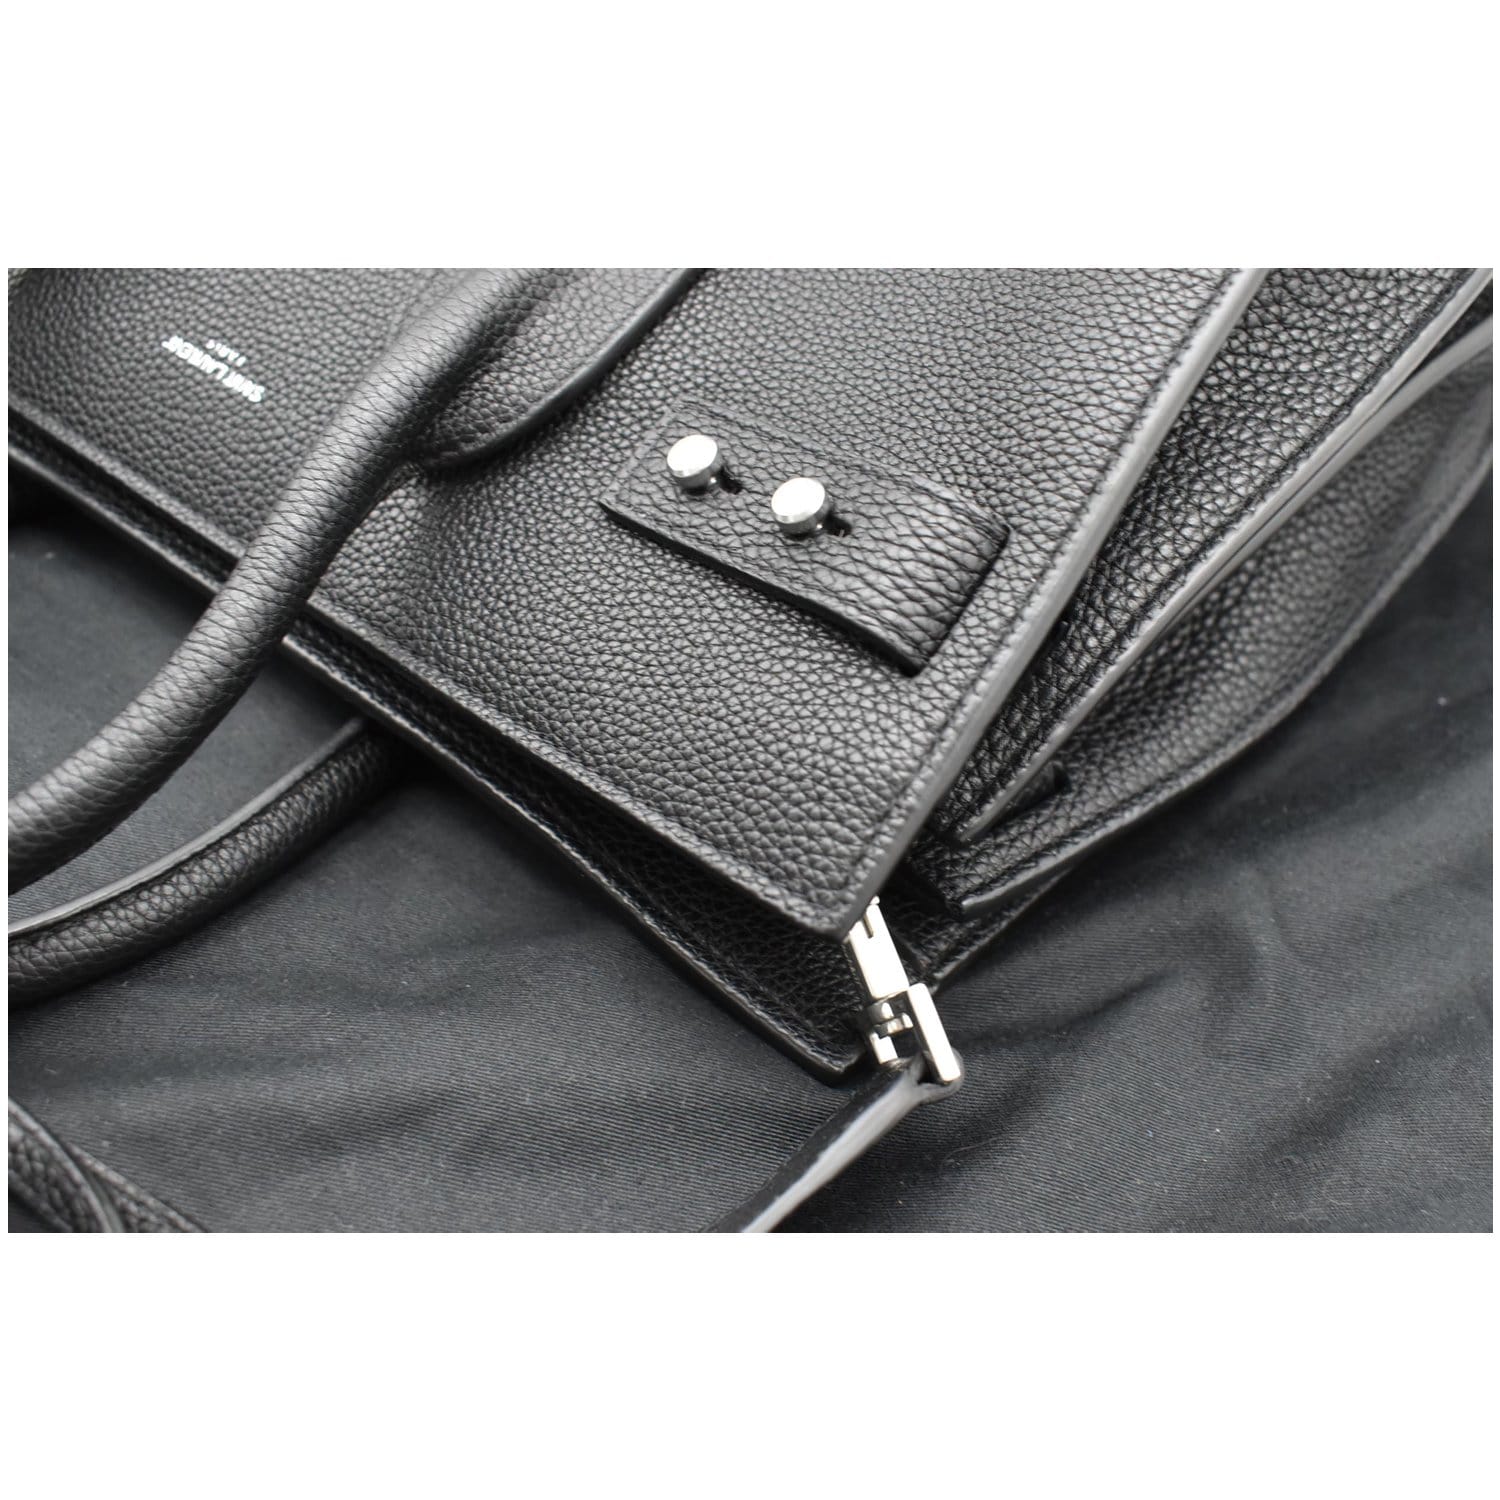 Sac De Jour Large Leather Bag in Black - Saint Laurent